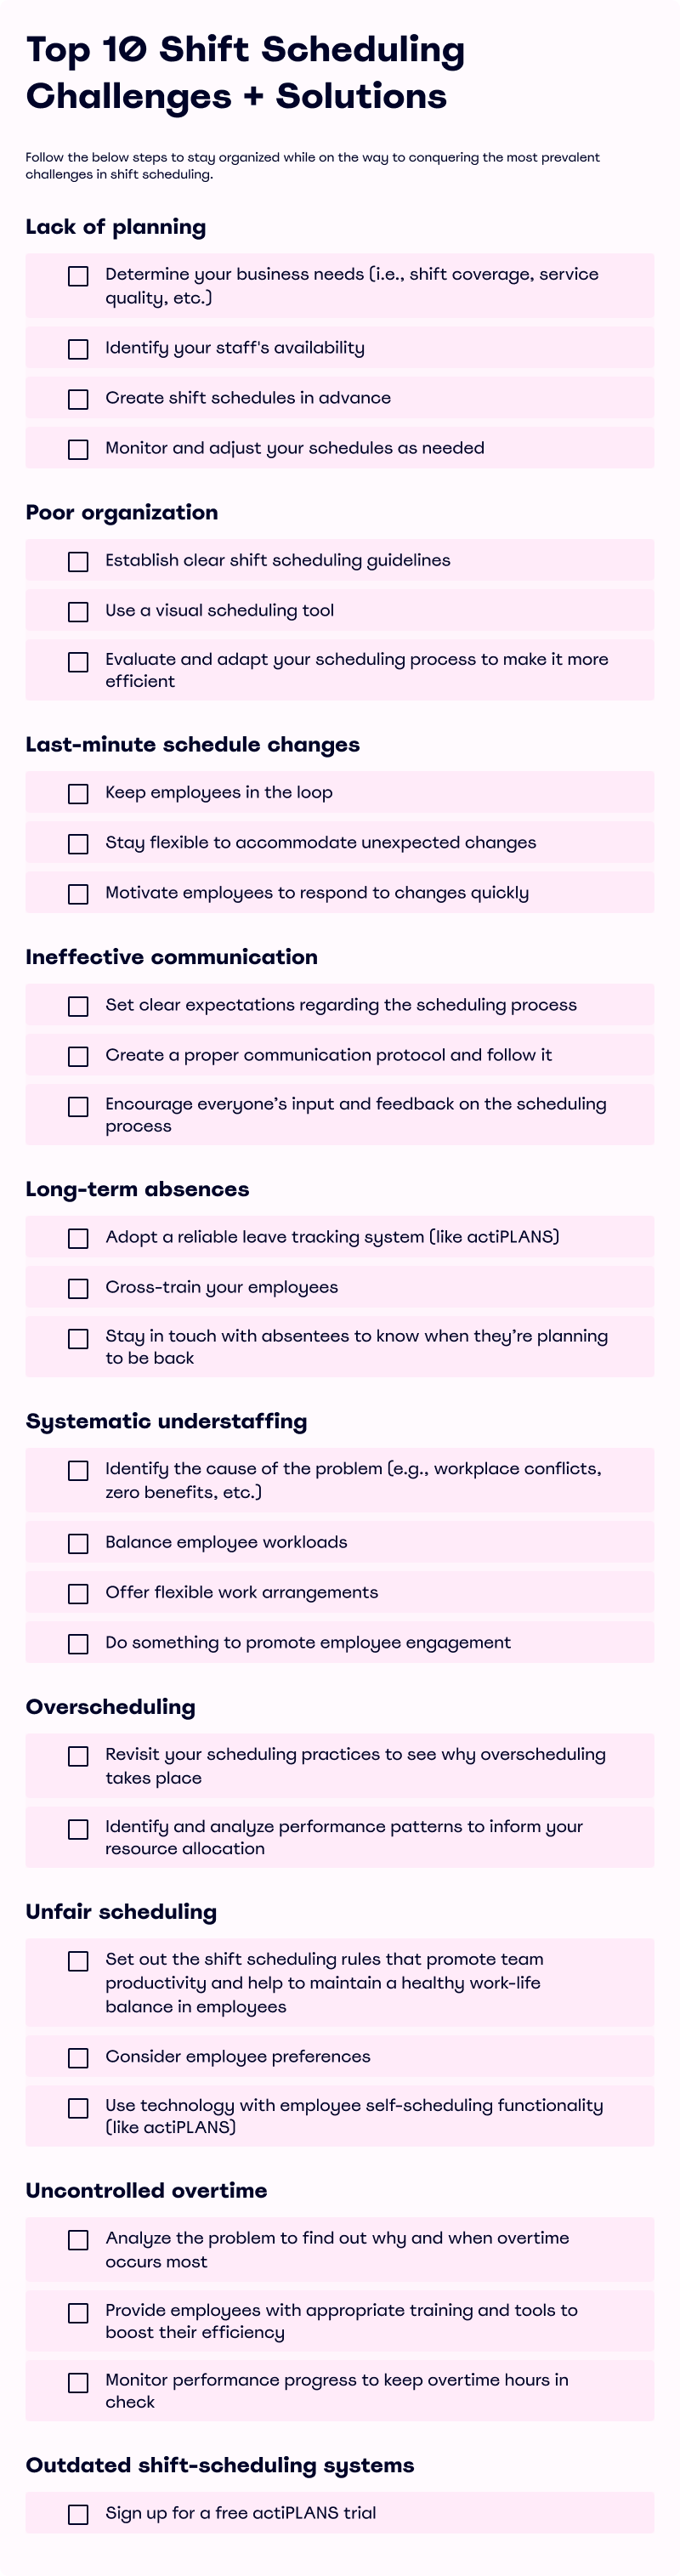 Shift scheduling challenges checklist